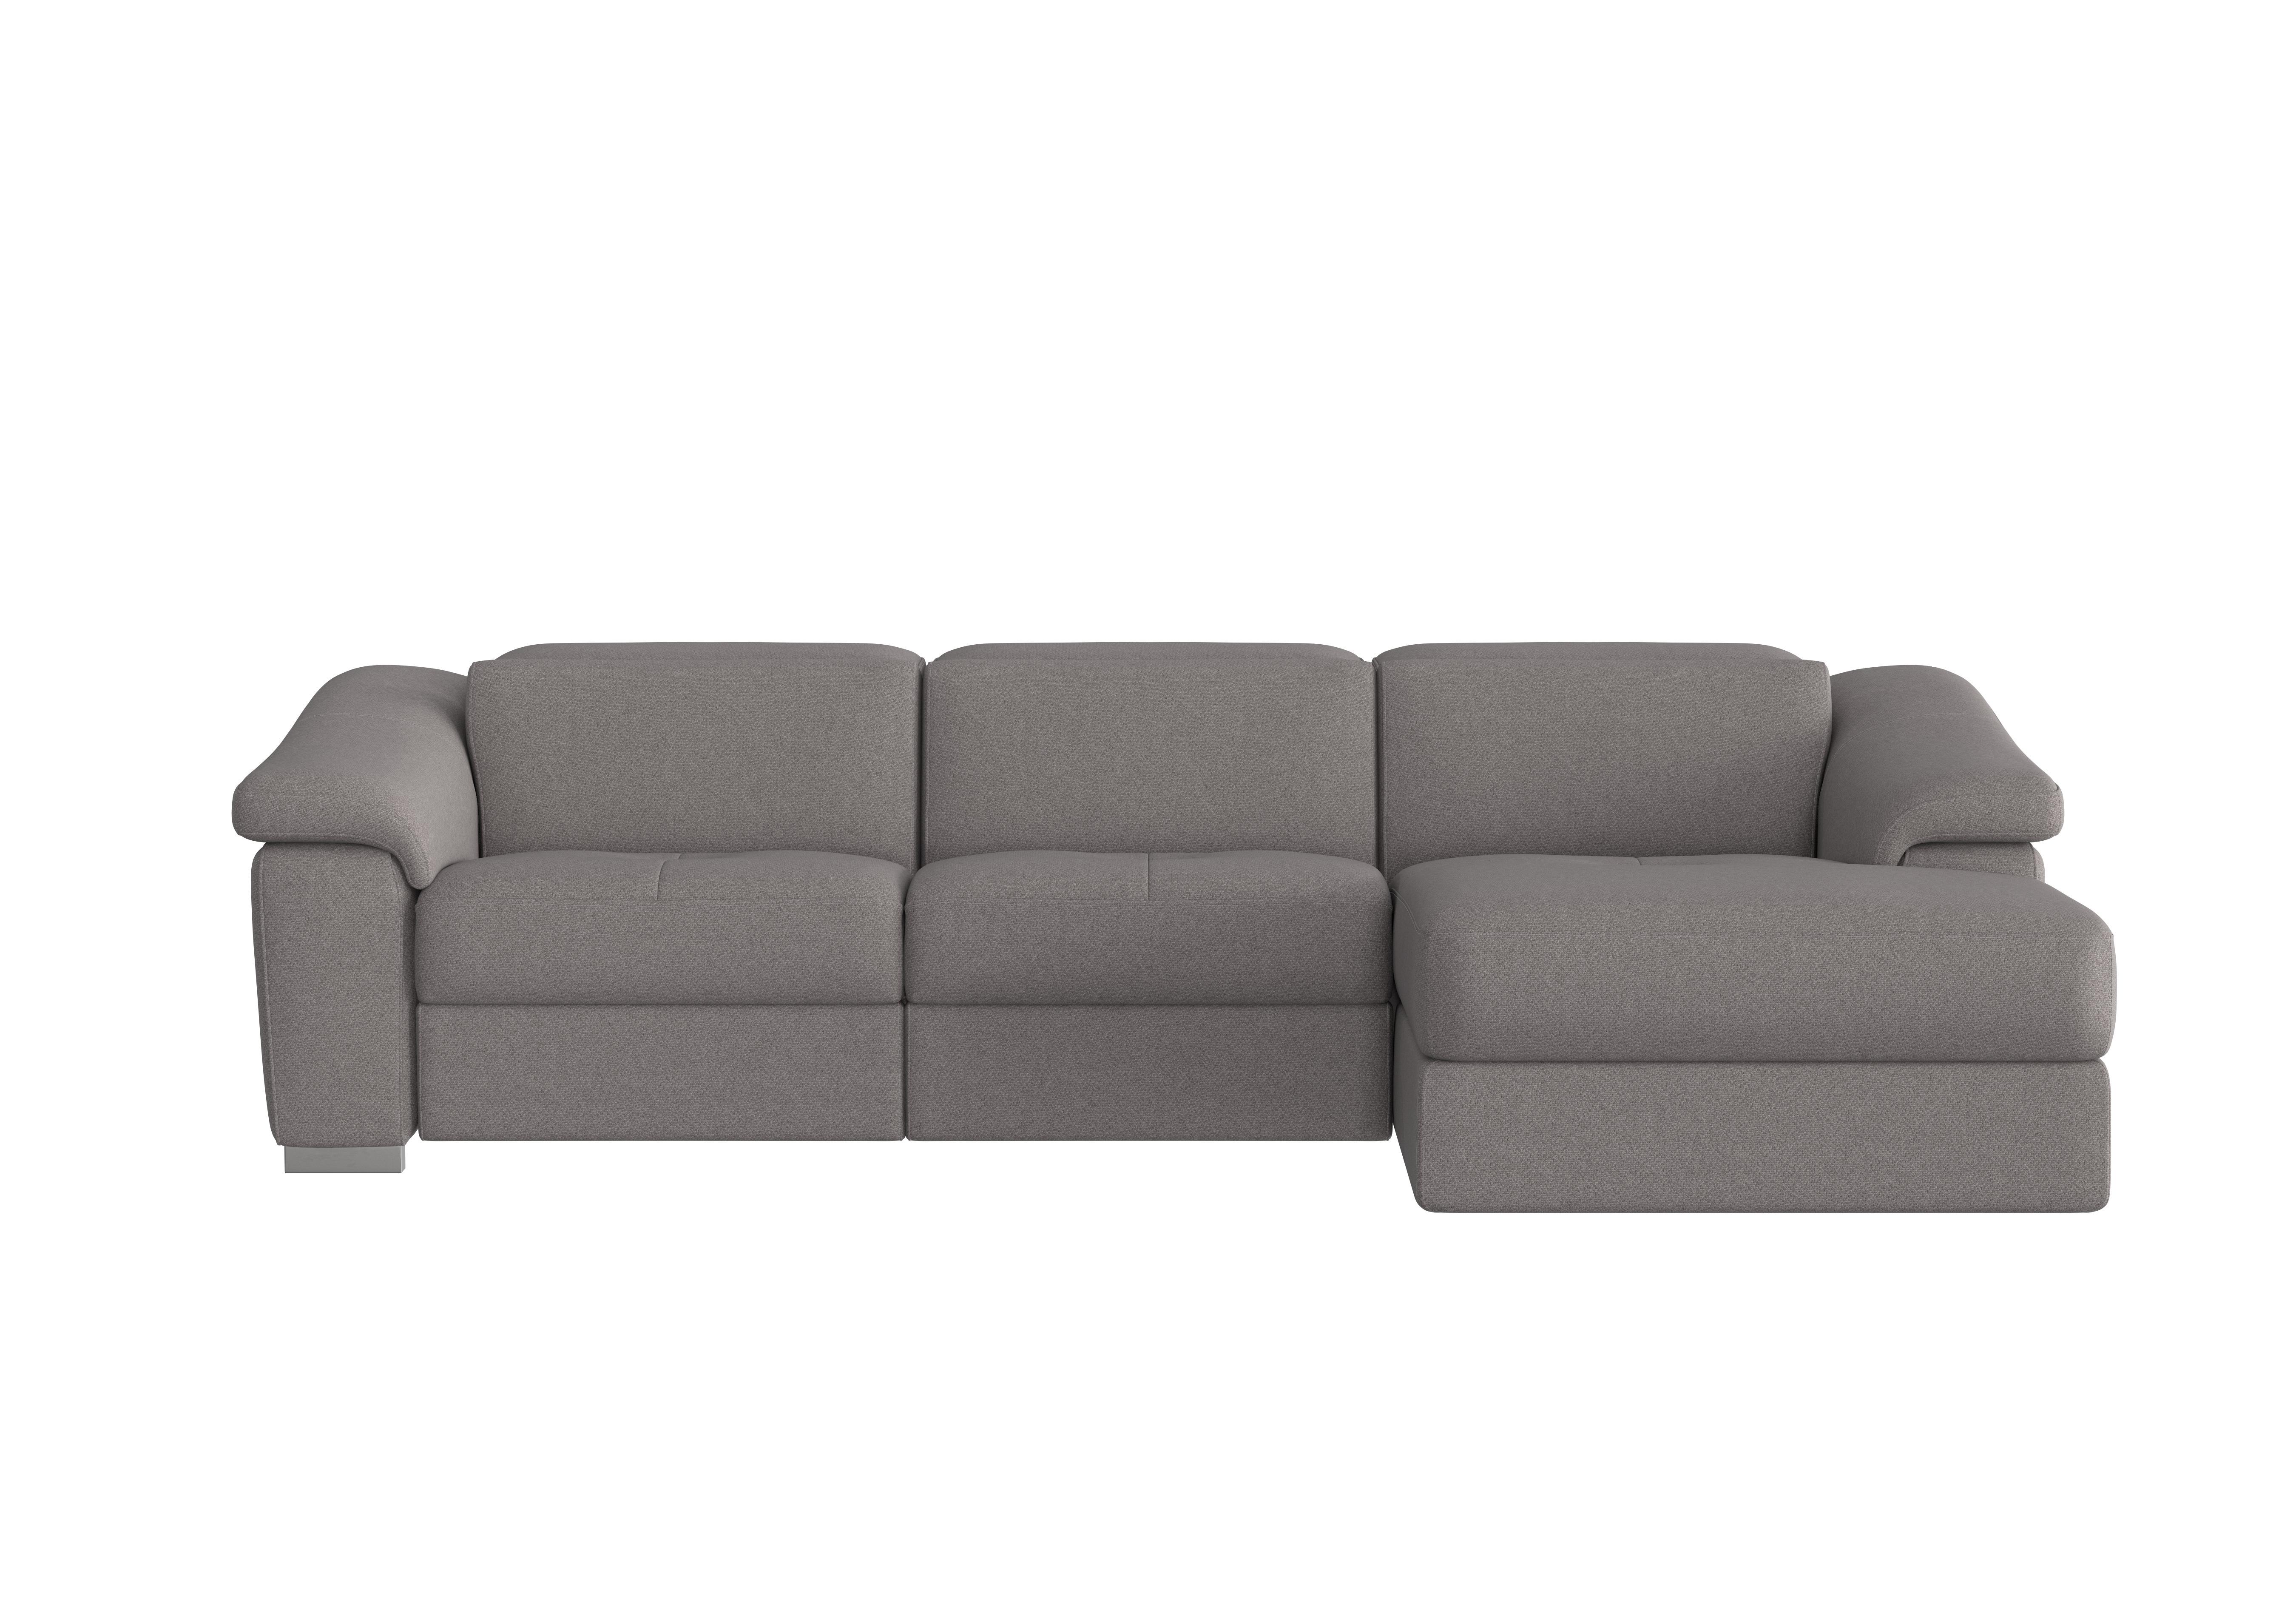 Galileo Fabric Chaise End Sofa in Coupe Grigio Topo 609 Ch on Furniture Village